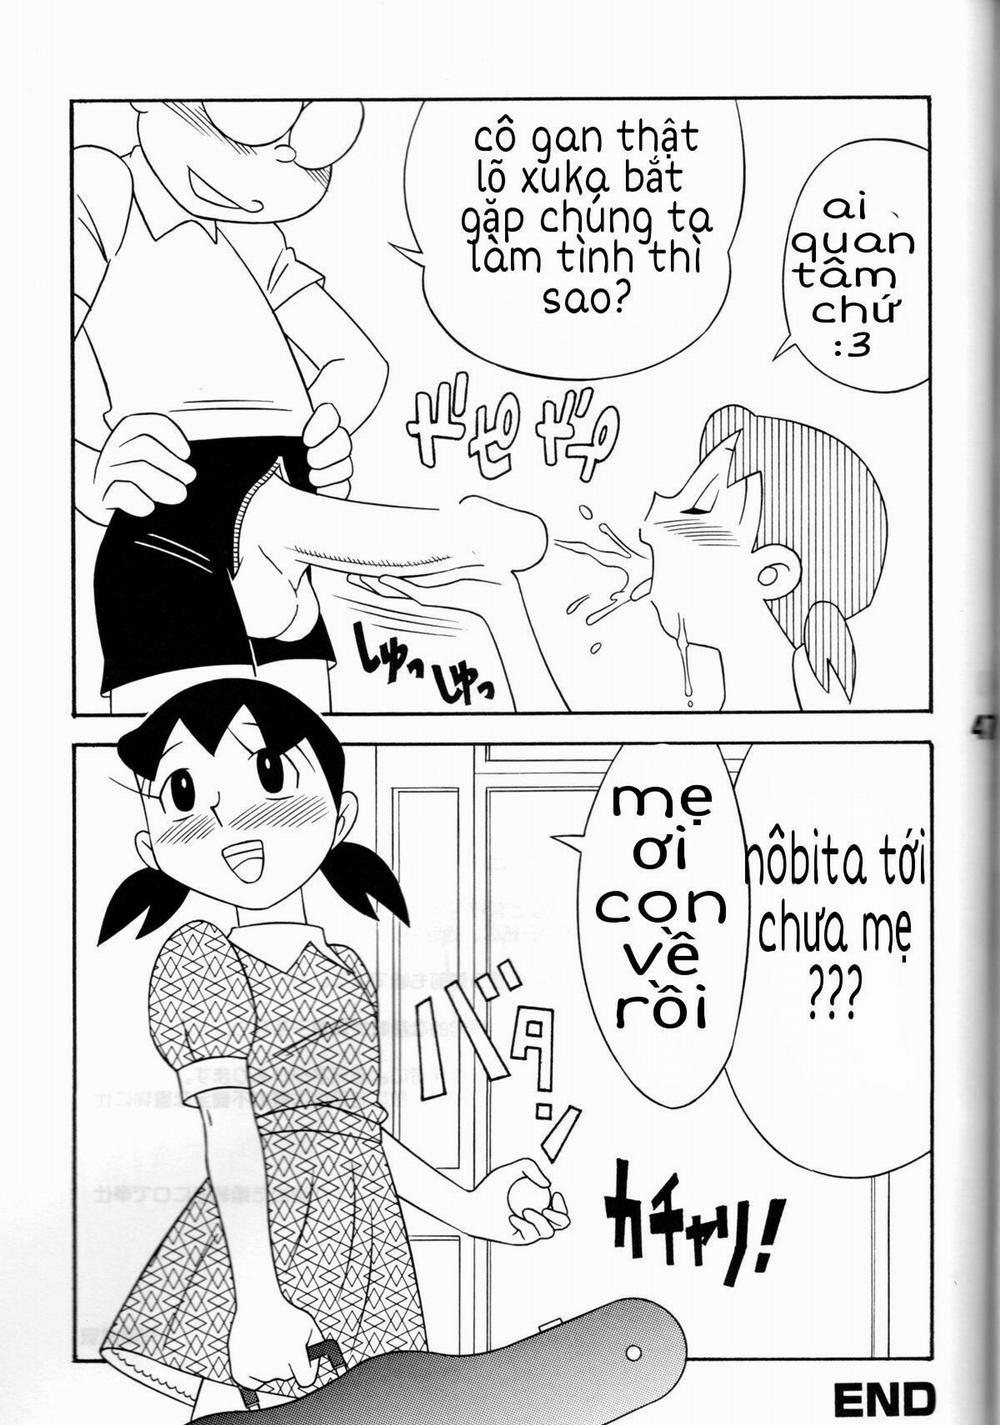 Tuyển Tập Doraemon Doujinshi 18+ Chương 7 Xuka v m g u Trang 39